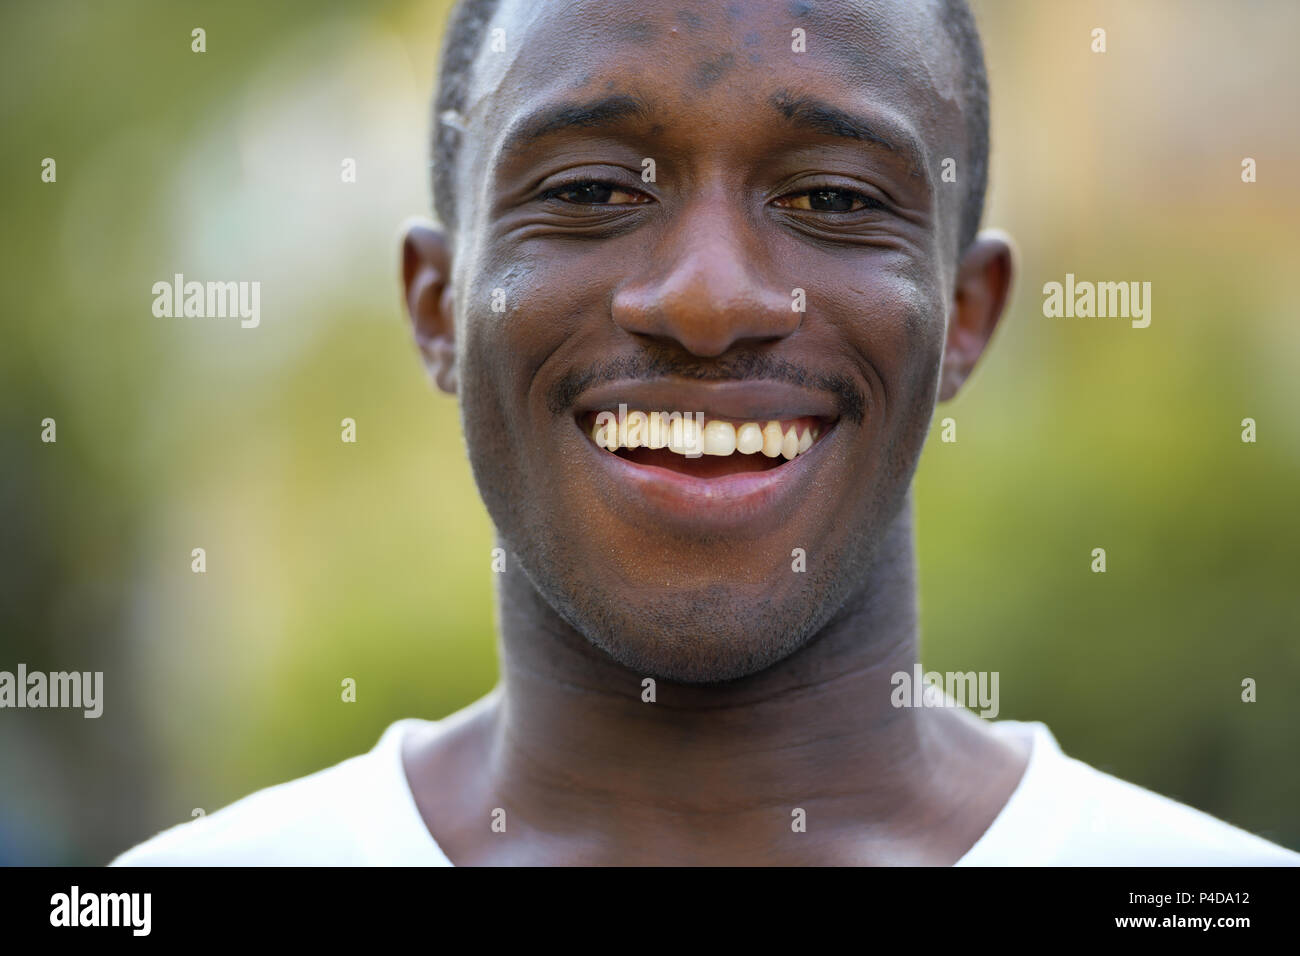 Les jeunes professionnels African man smiling dans les rues à l'extérieur Banque D'Images